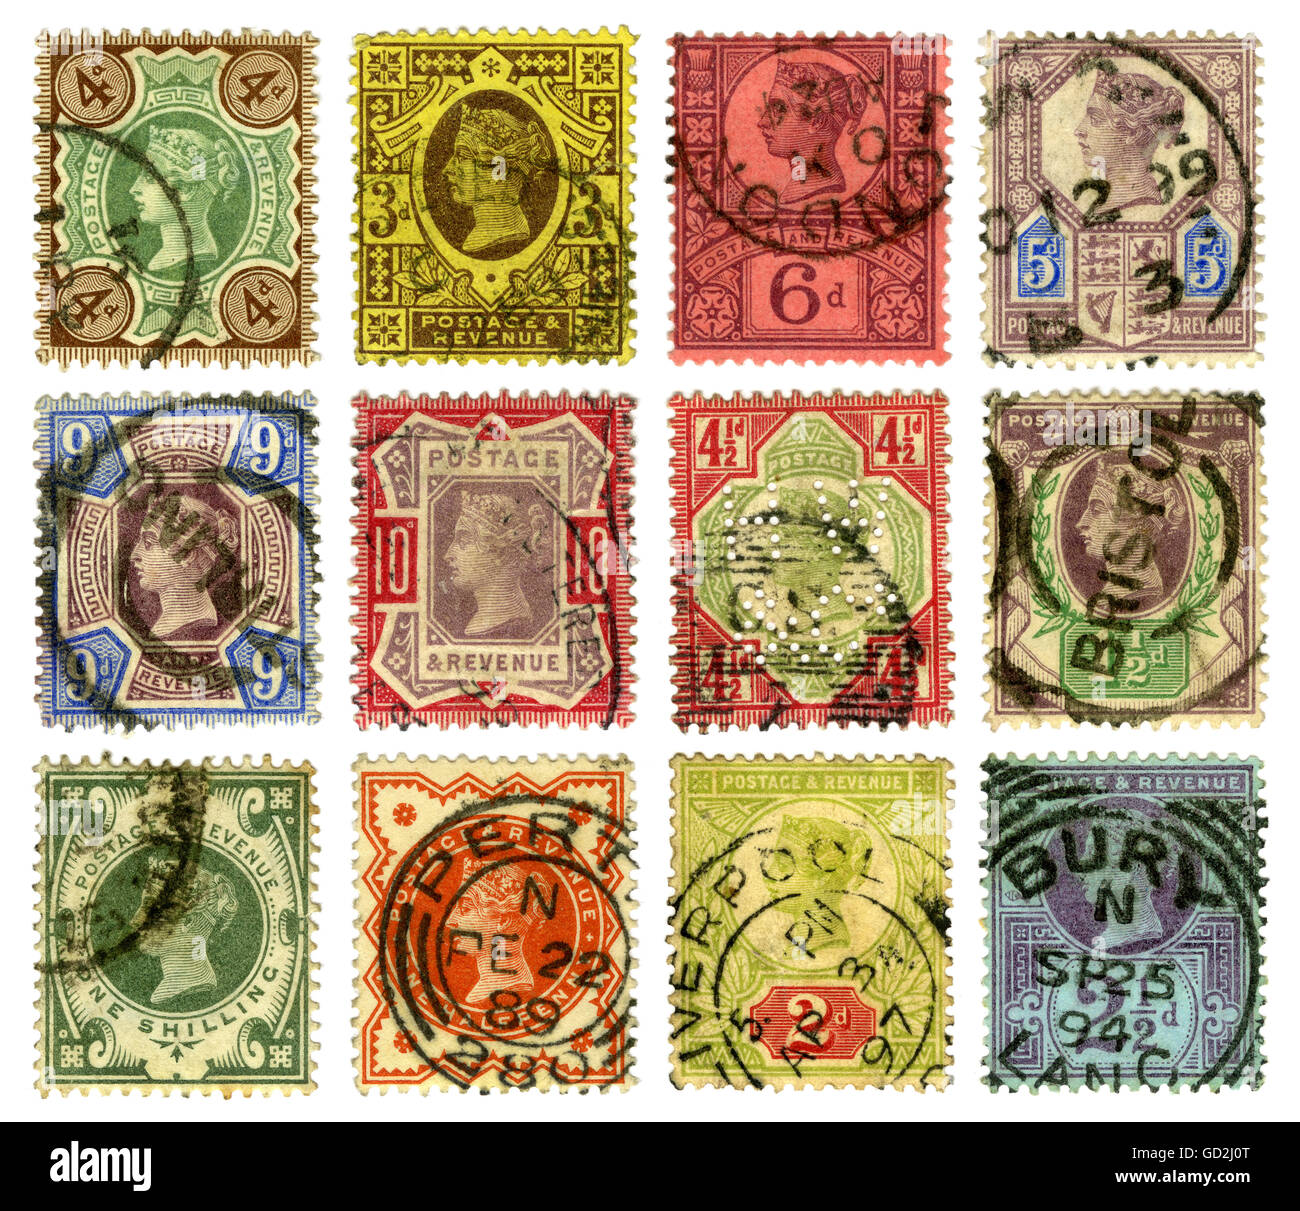 Francobolli britannici immagini e fotografie stock ad alta risoluzione -  Alamy